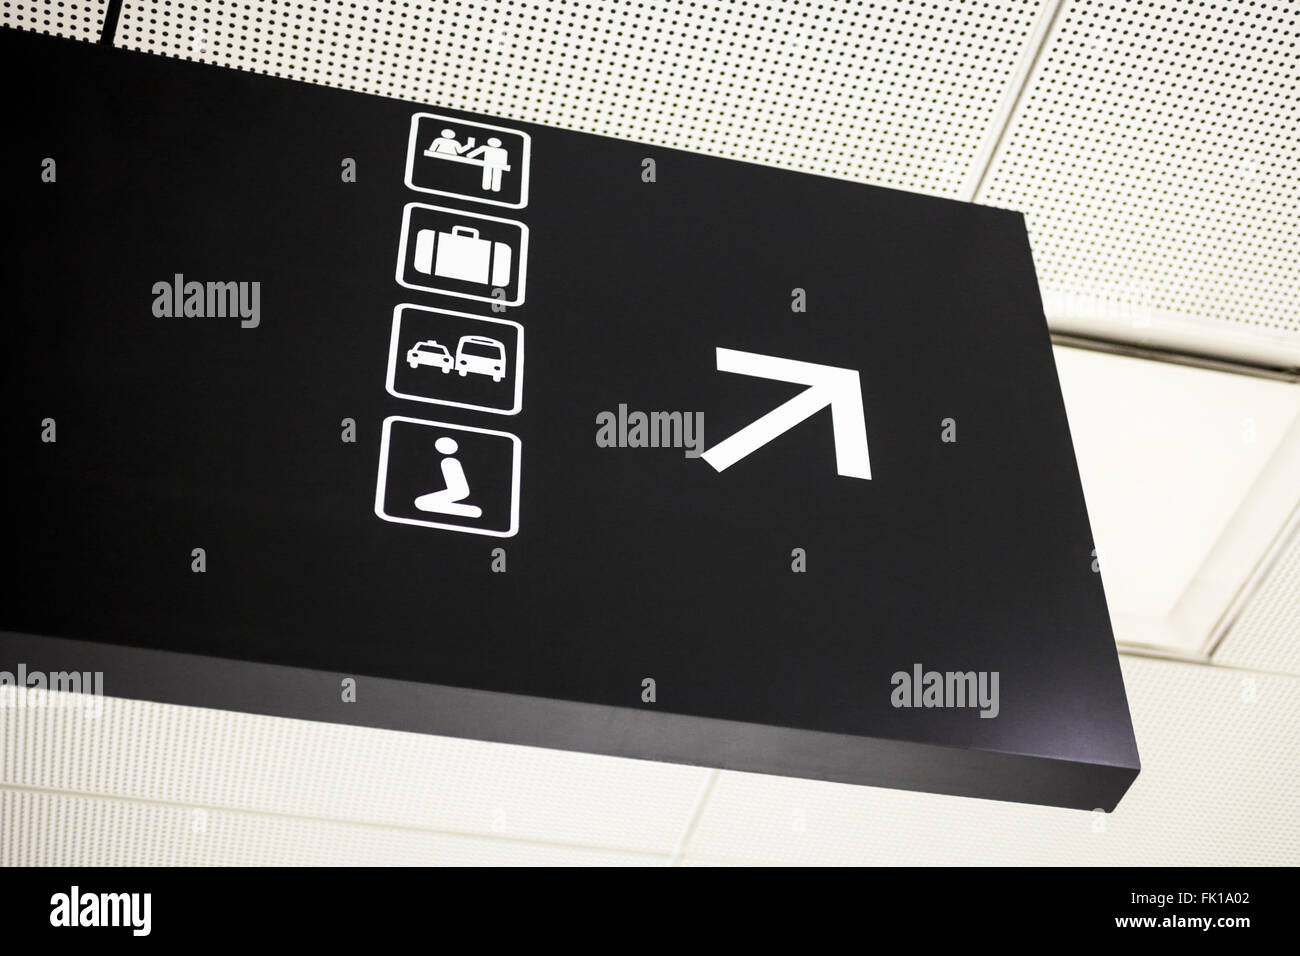 La flèche de l'aéroport de signer avec des symboles pour bar, récupération des bagages, le transport au sol, et la prière religieuse Banque D'Images